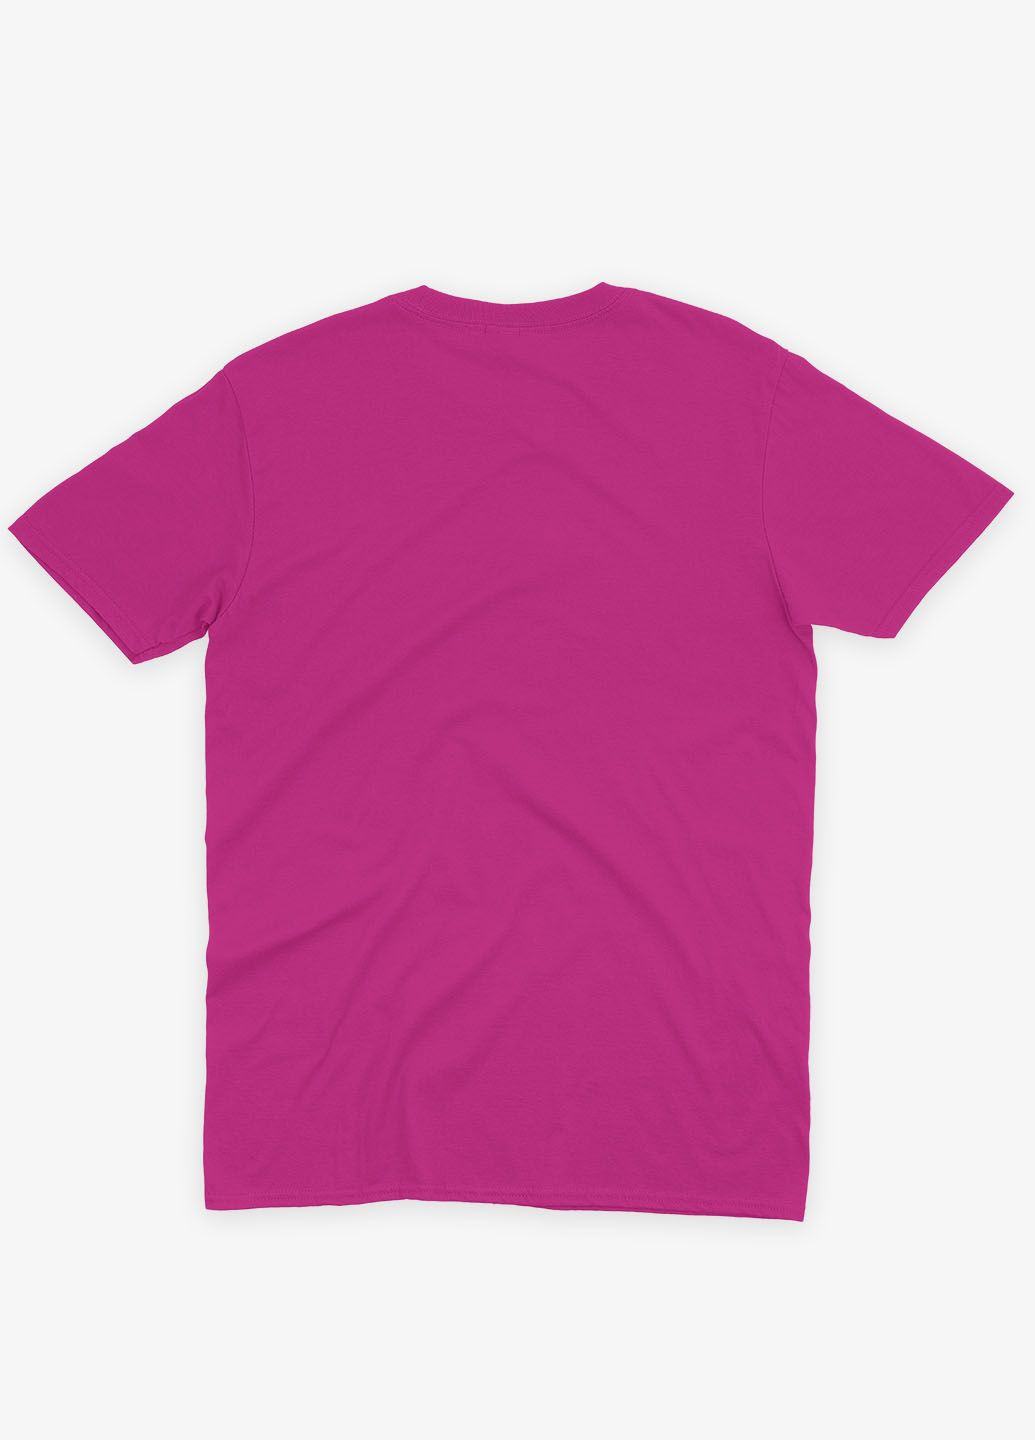 Розовая демисезонная футболка для девочки с принтом супергероев - часовые галактики (ts001-1-fuxj-006-017-013-g) Modno